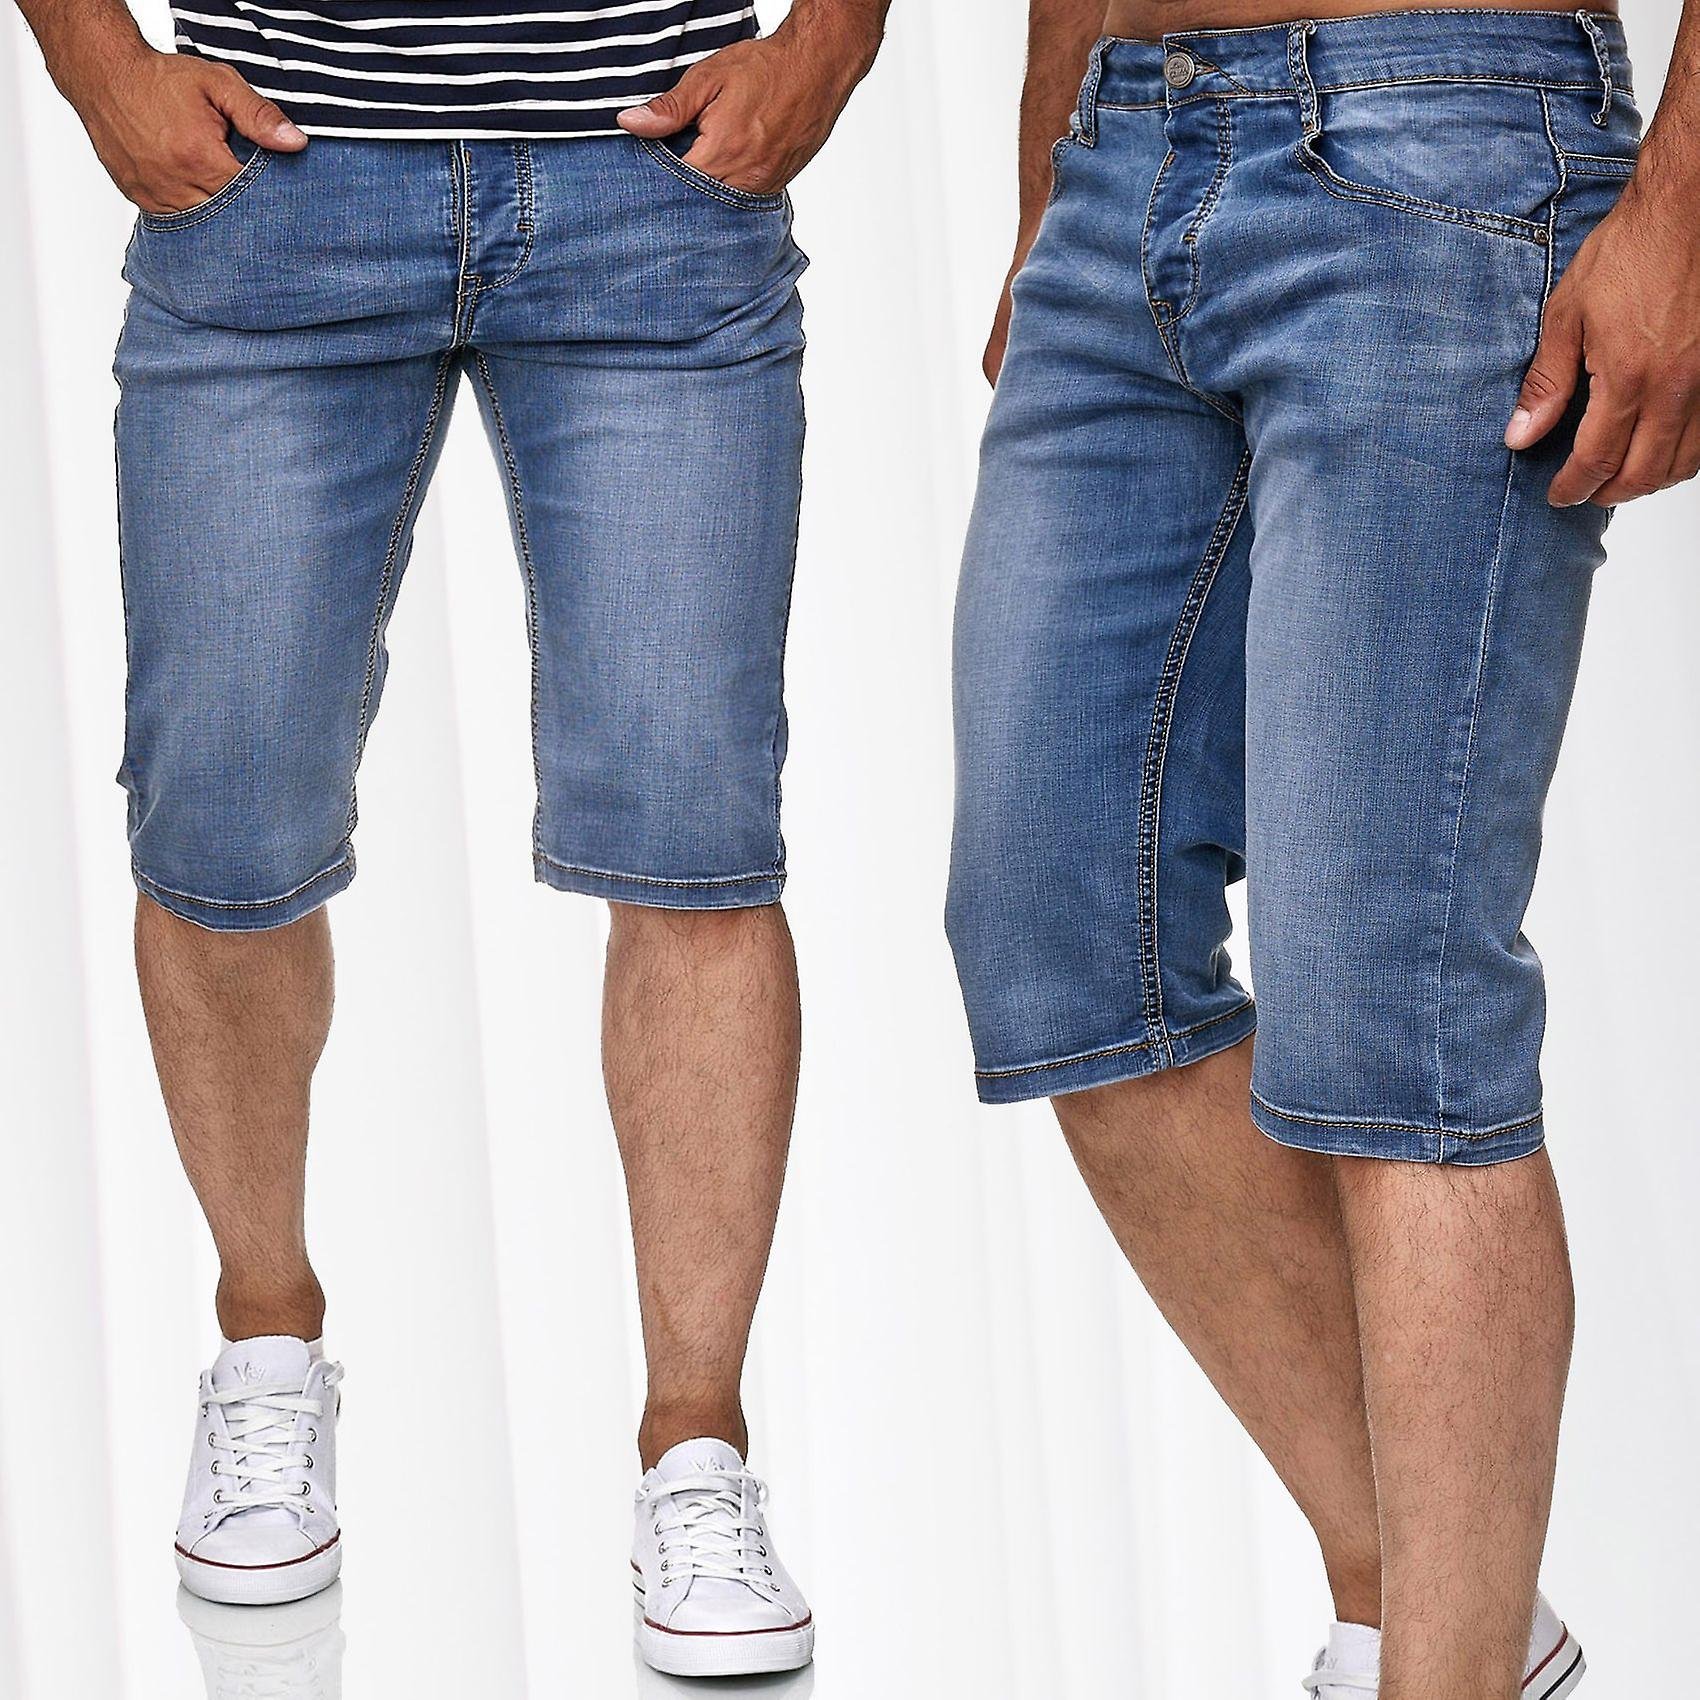 Как подобрать шорты. Мужские джинсовые шорты Yessica Denim. Мужские капри бермуды. Бриджи джинсовые мужские Vingoson Denim model 2015-02. Джинсовые шорты DOUBLEFOAL 1979 мужские.